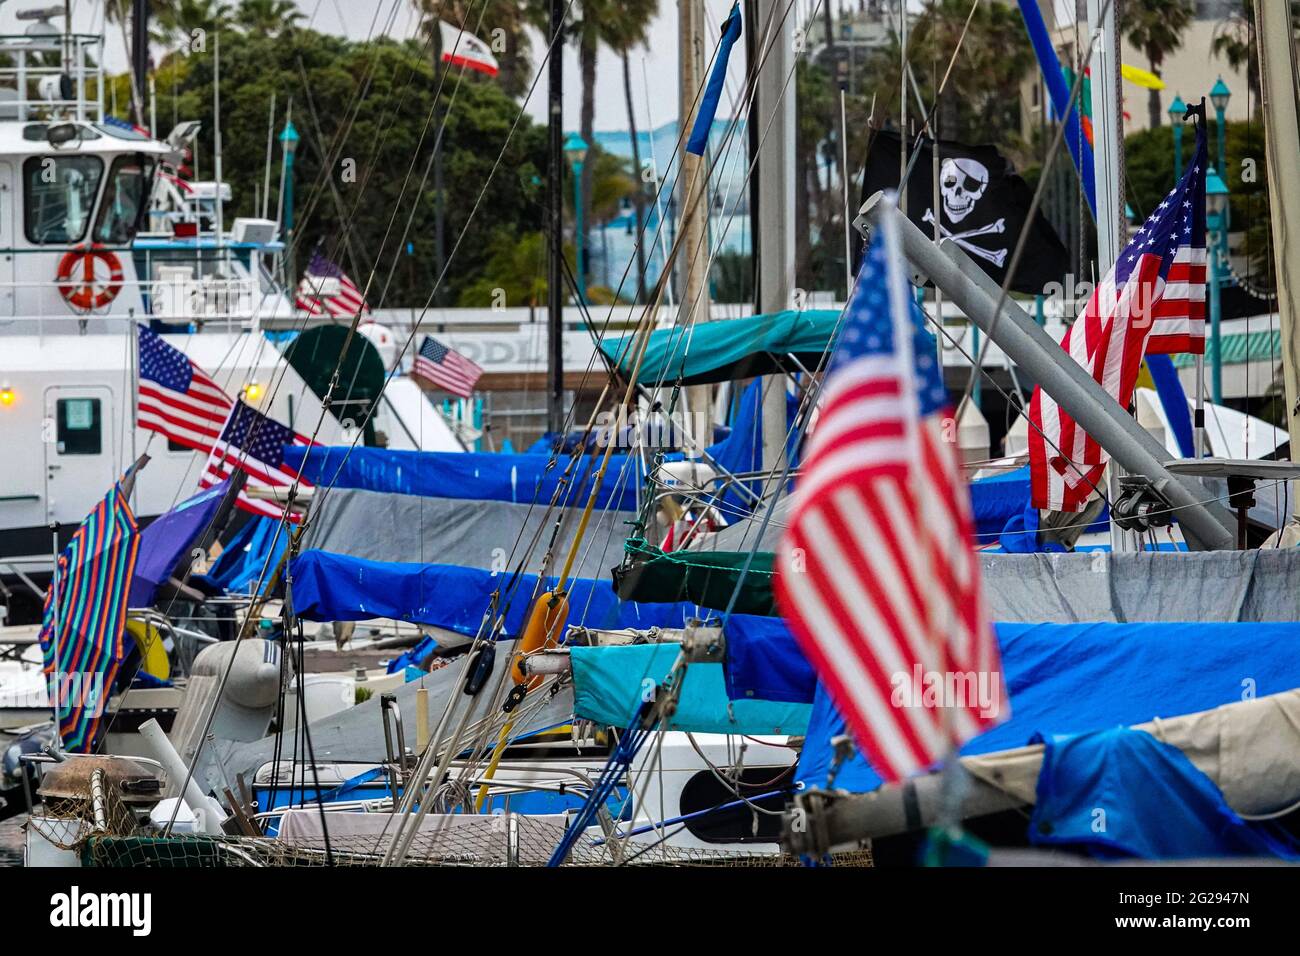 Più bandiere americane dominano un molo di barca, con una bandiera pirata che vola orgogliosamente annunciando la presenza di un individuo canaglia. Foto Stock